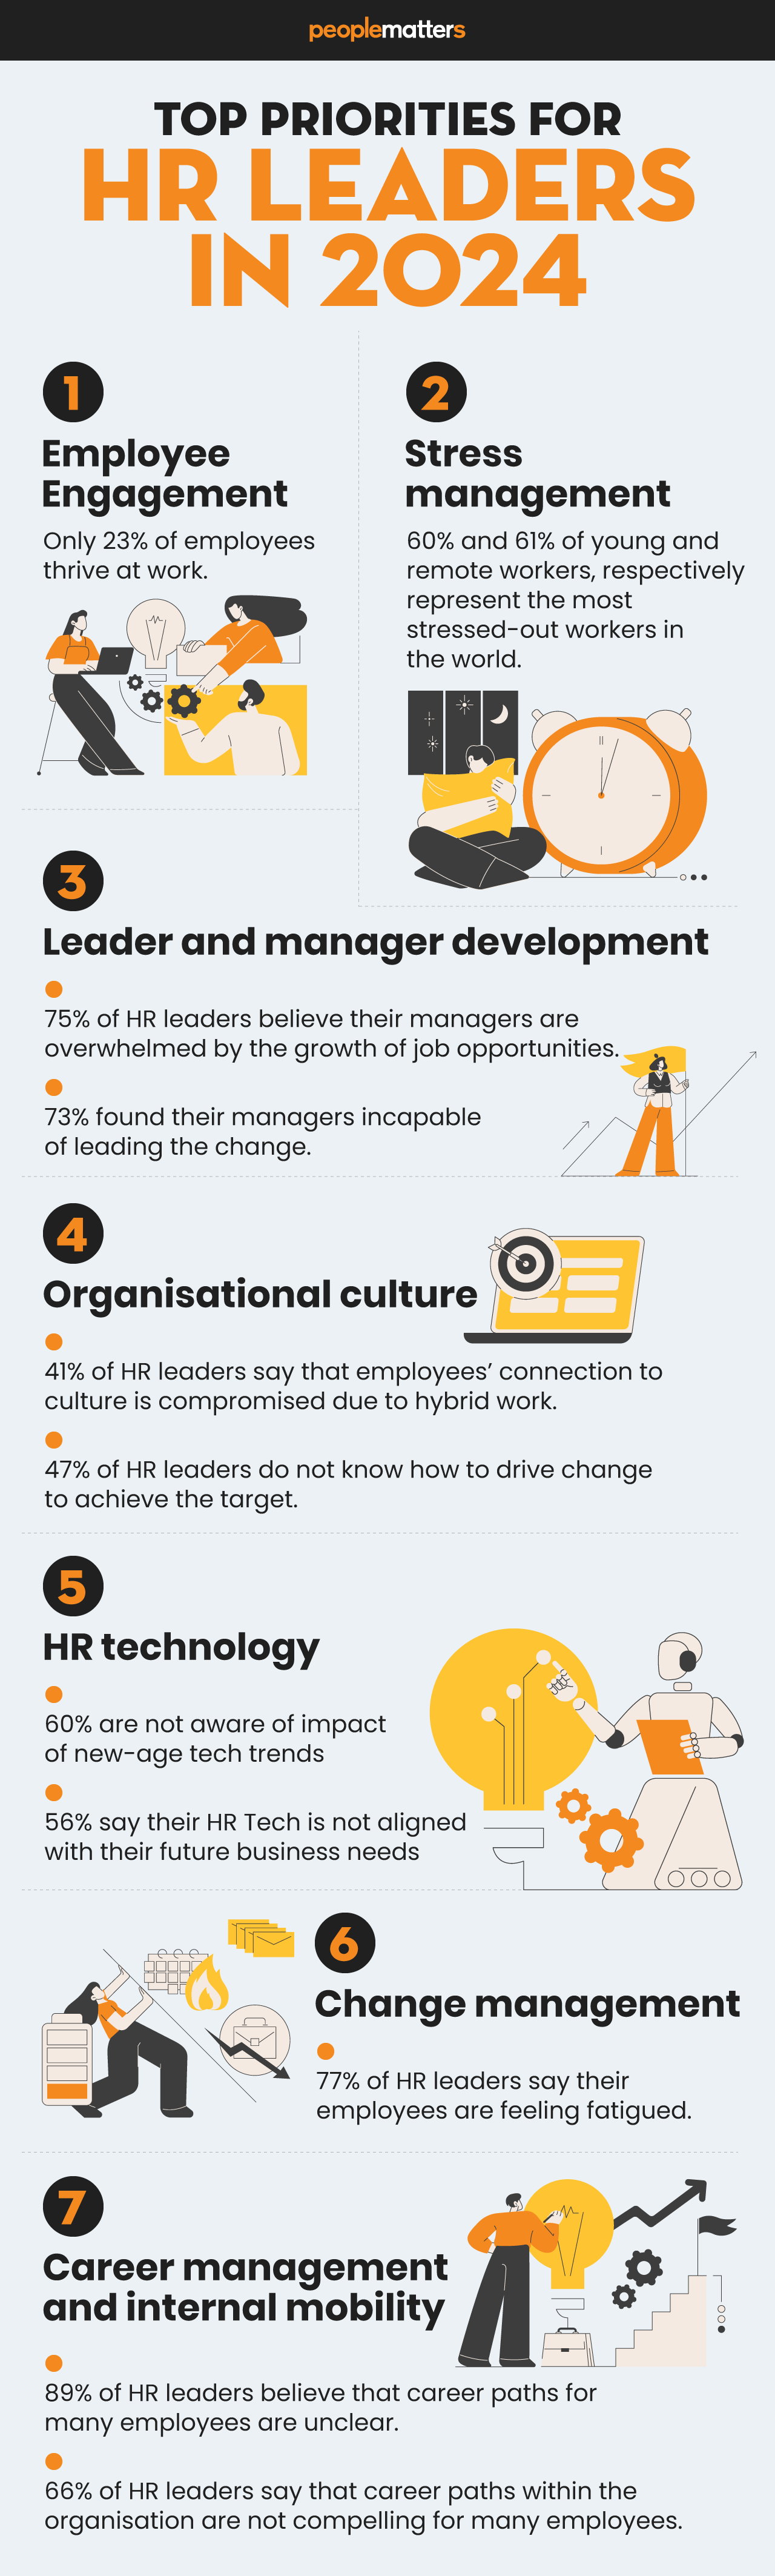 Priorities of HR leaders in 2024